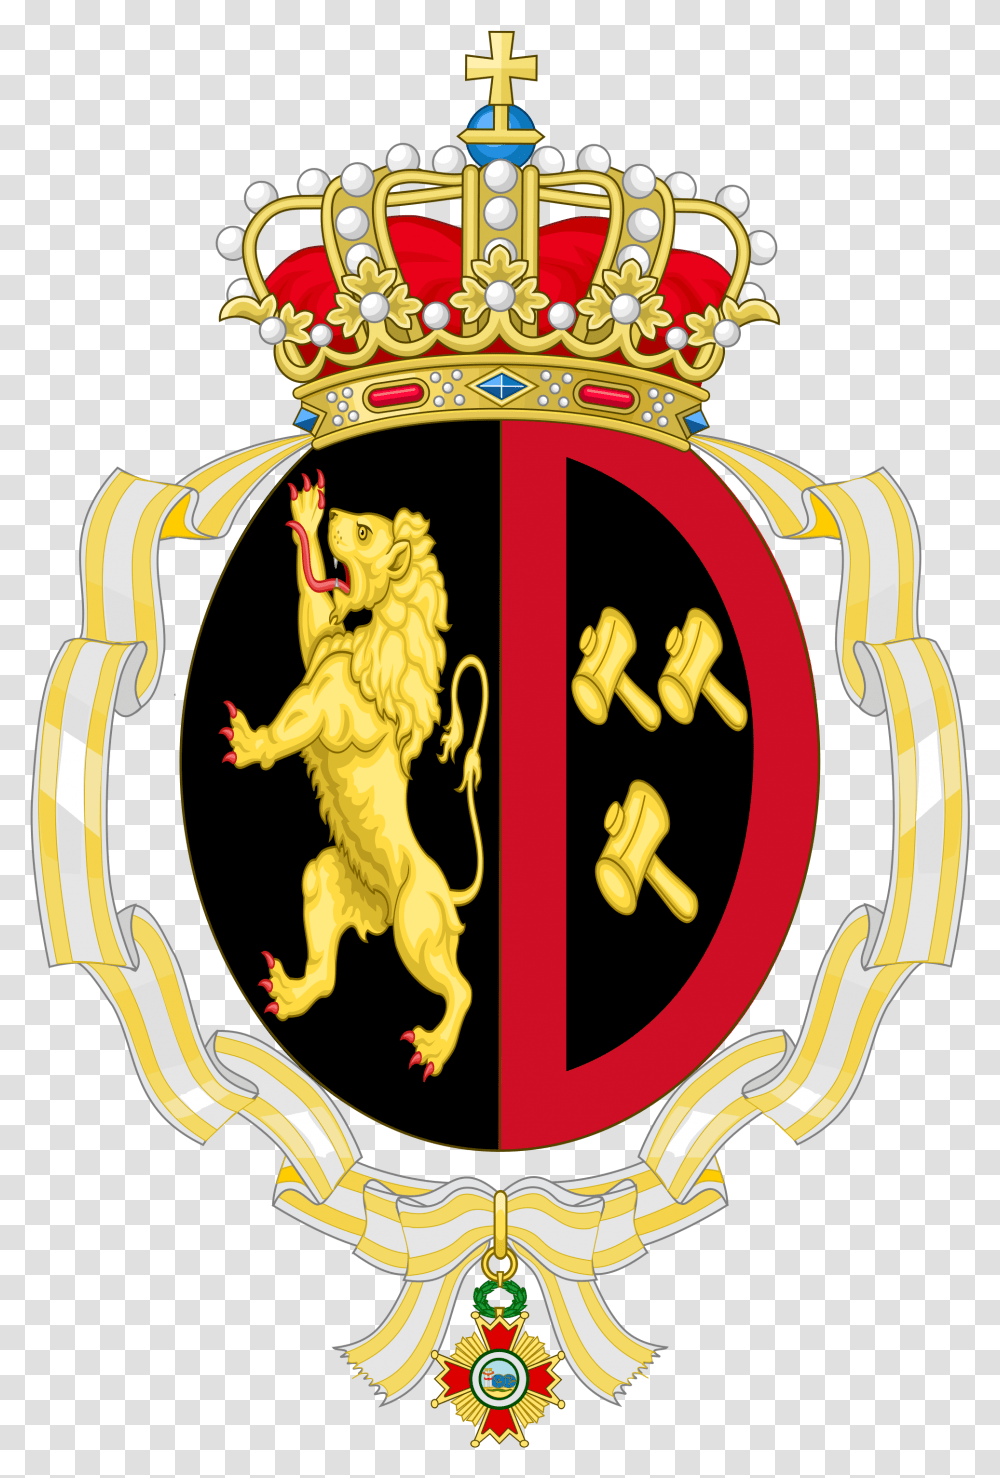 Crown And Sash Clipart Coat Of Arms Princess Mathilde Of Belgium, Logo, Trademark, Emblem Transparent Png